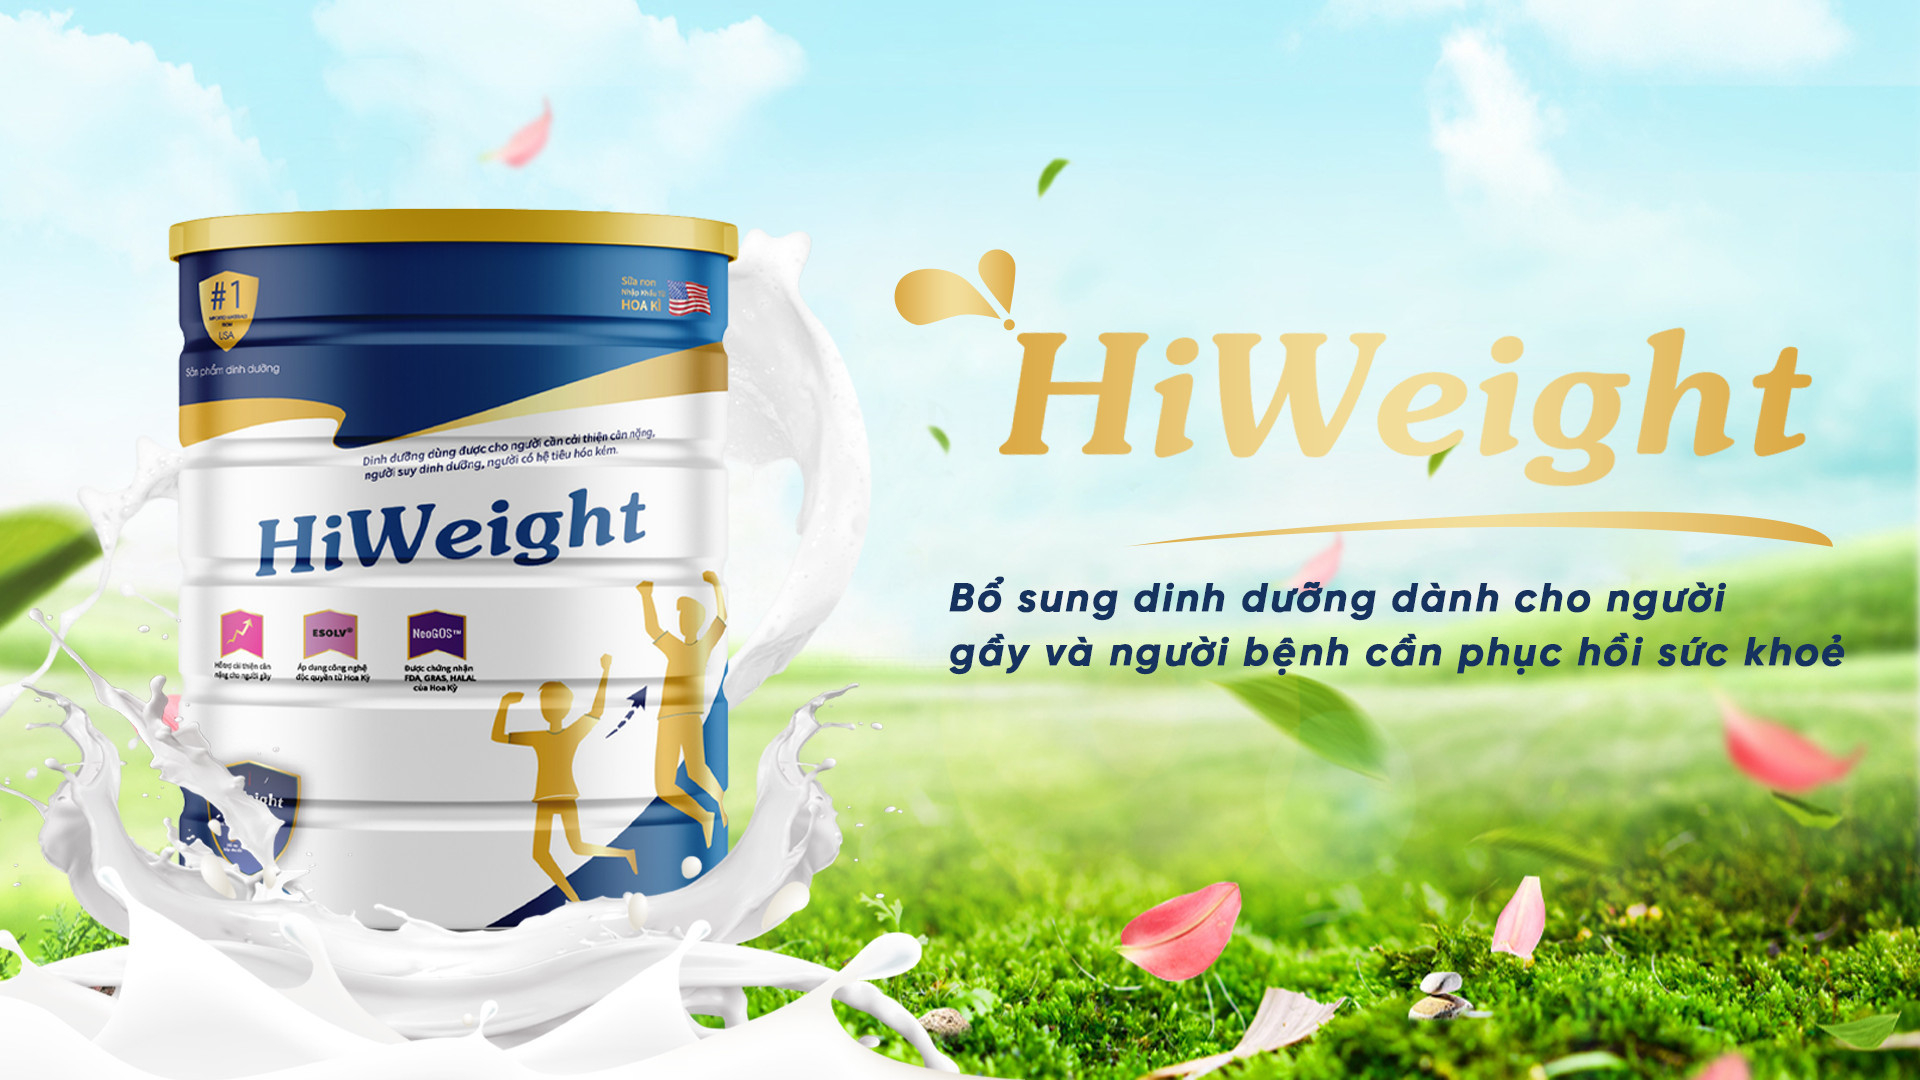 HiWeight - Sản phẩm bổ sung dinh dưỡng dành cho người gầy được ưa chuộng hiện nay - 1